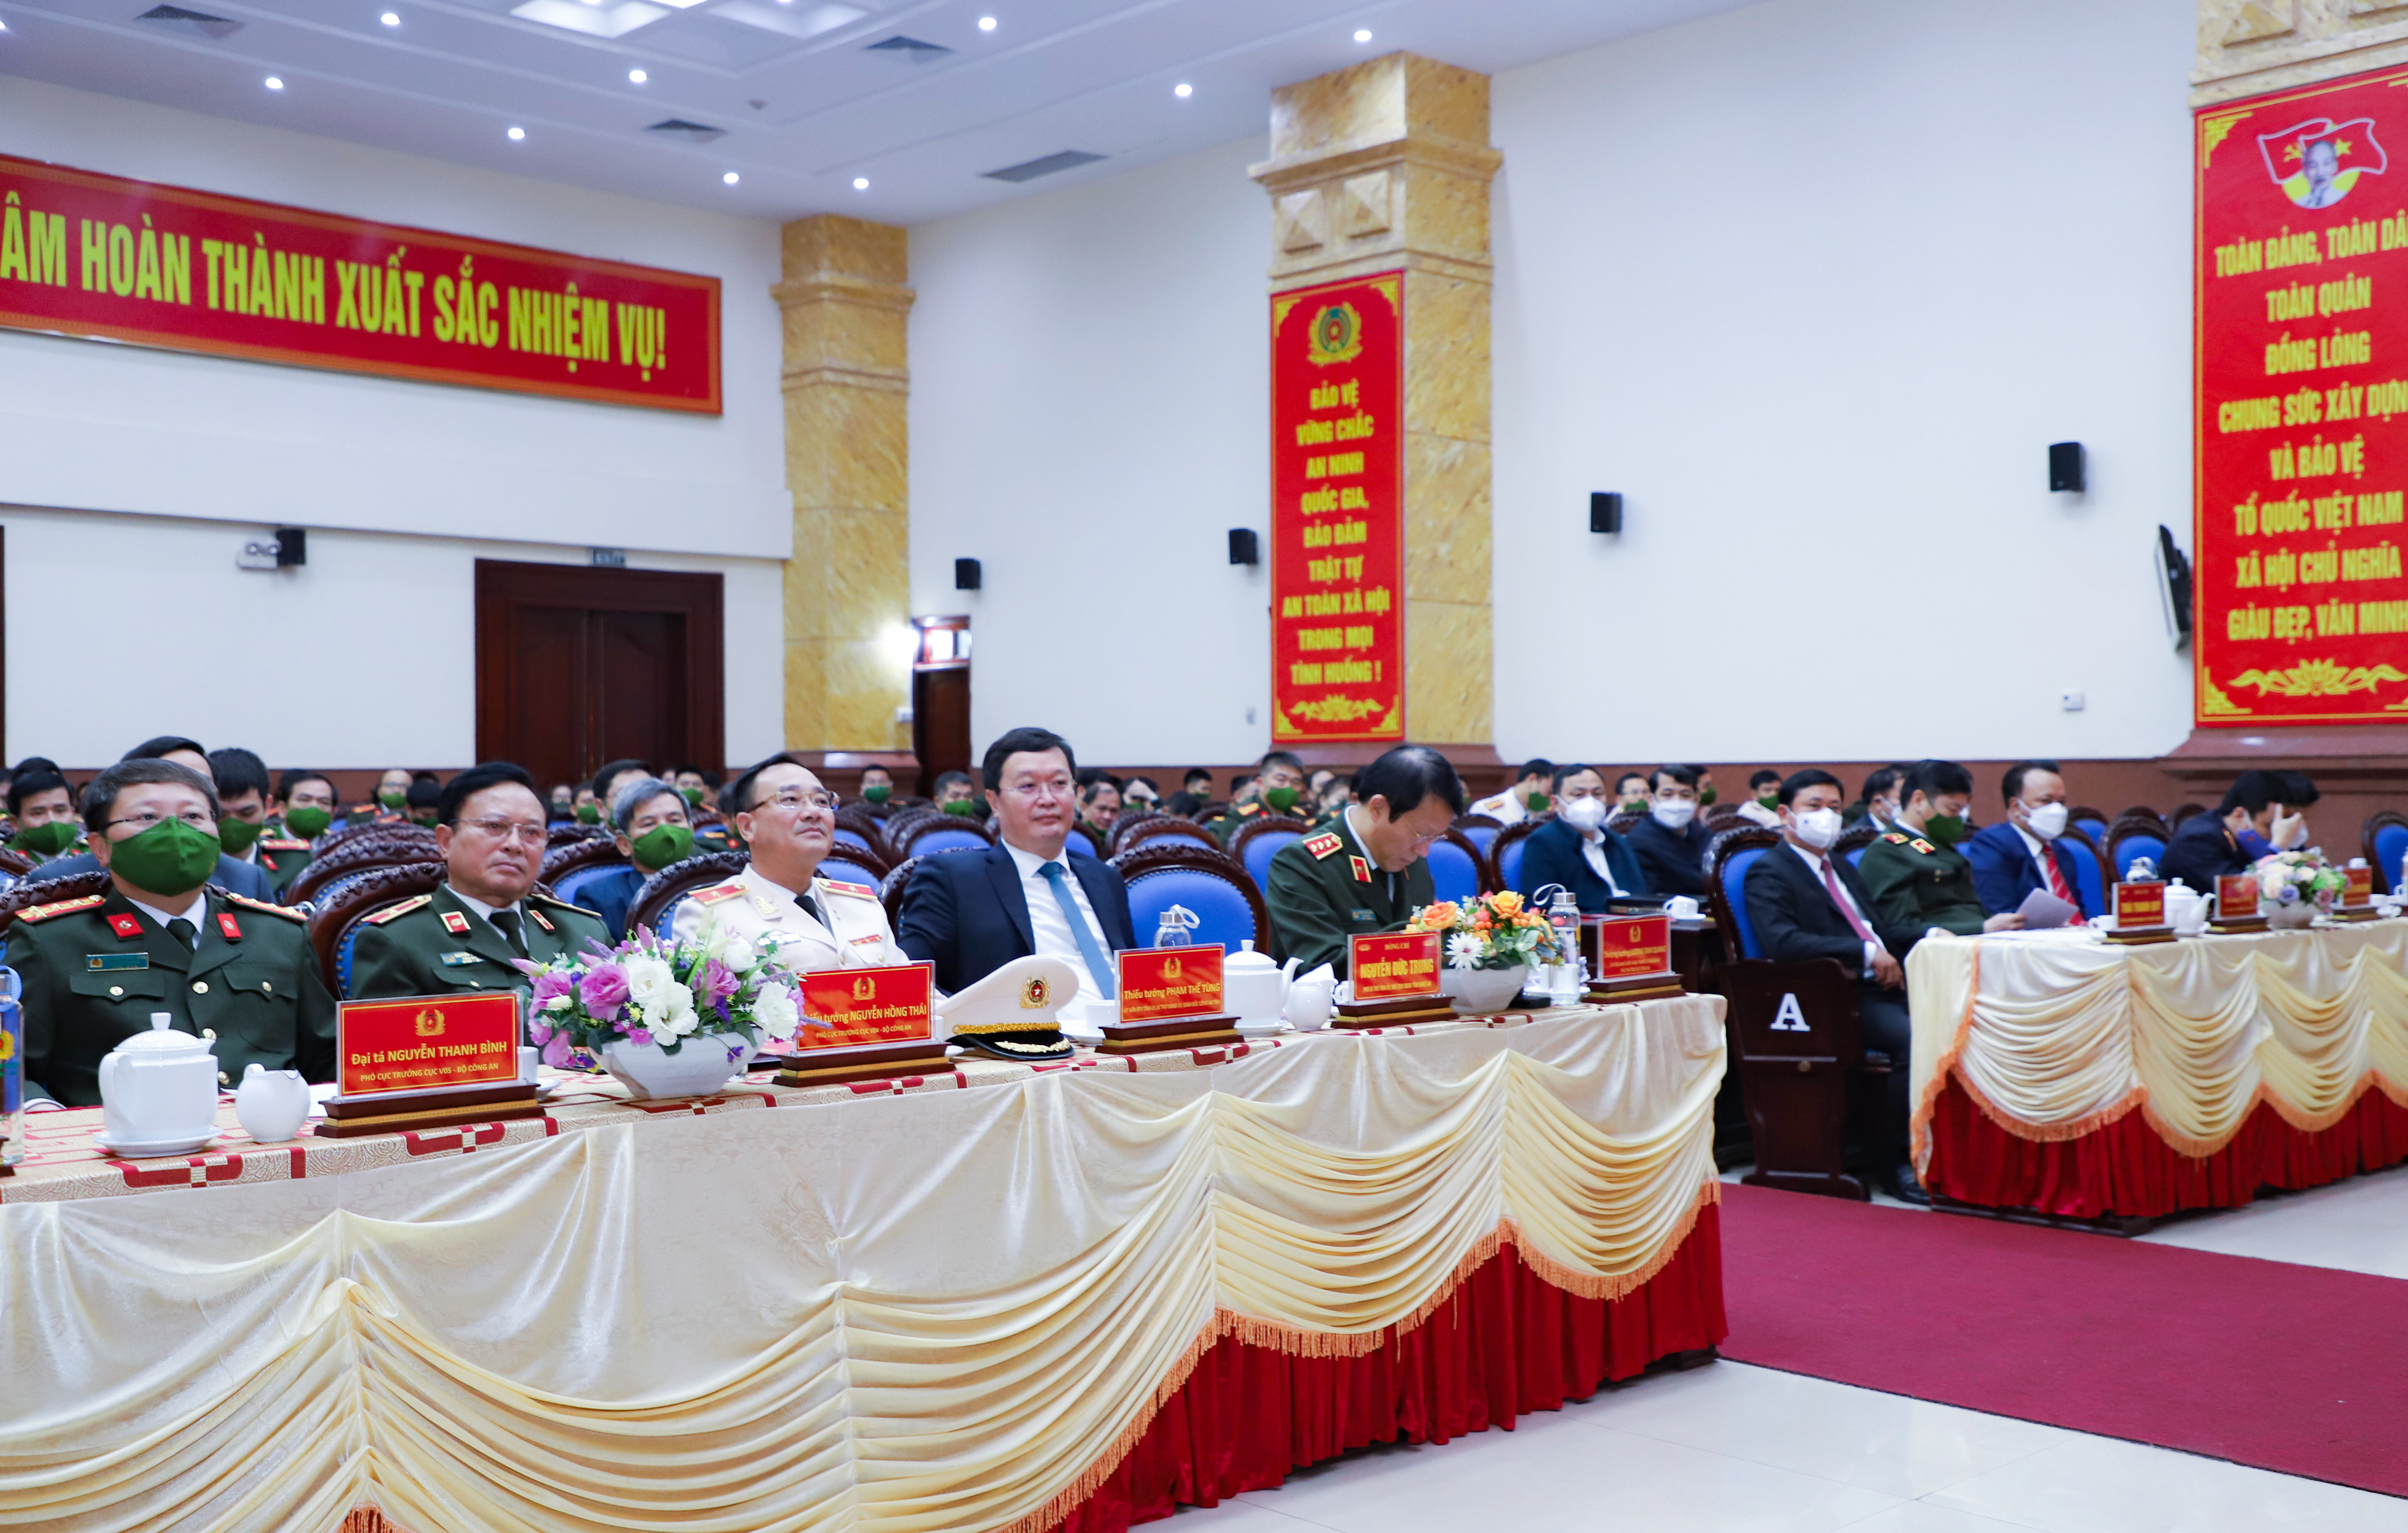 Các đồng chí lãnh đạo Bộ Công an, tỉnh Nghệ An tham dự Hội nghị. Ảnh: Phạm Bằng